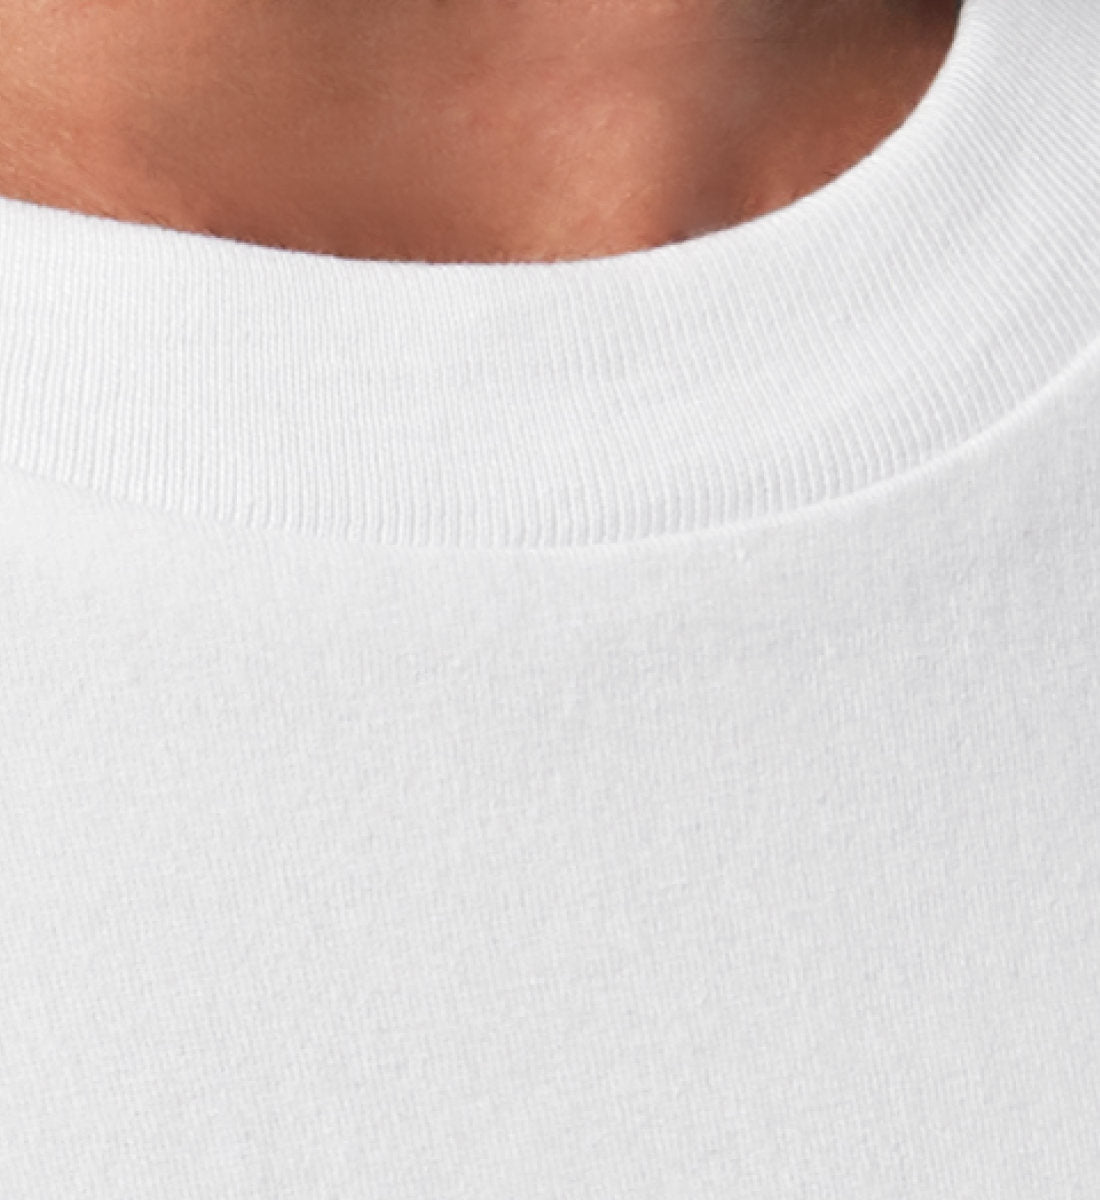 Weißes T-Shirt Unisex Relaxed Fit für Frauen und Männer bedruckt mit dem Design der Roger Rockawoo Kollektion Engelszahl 555